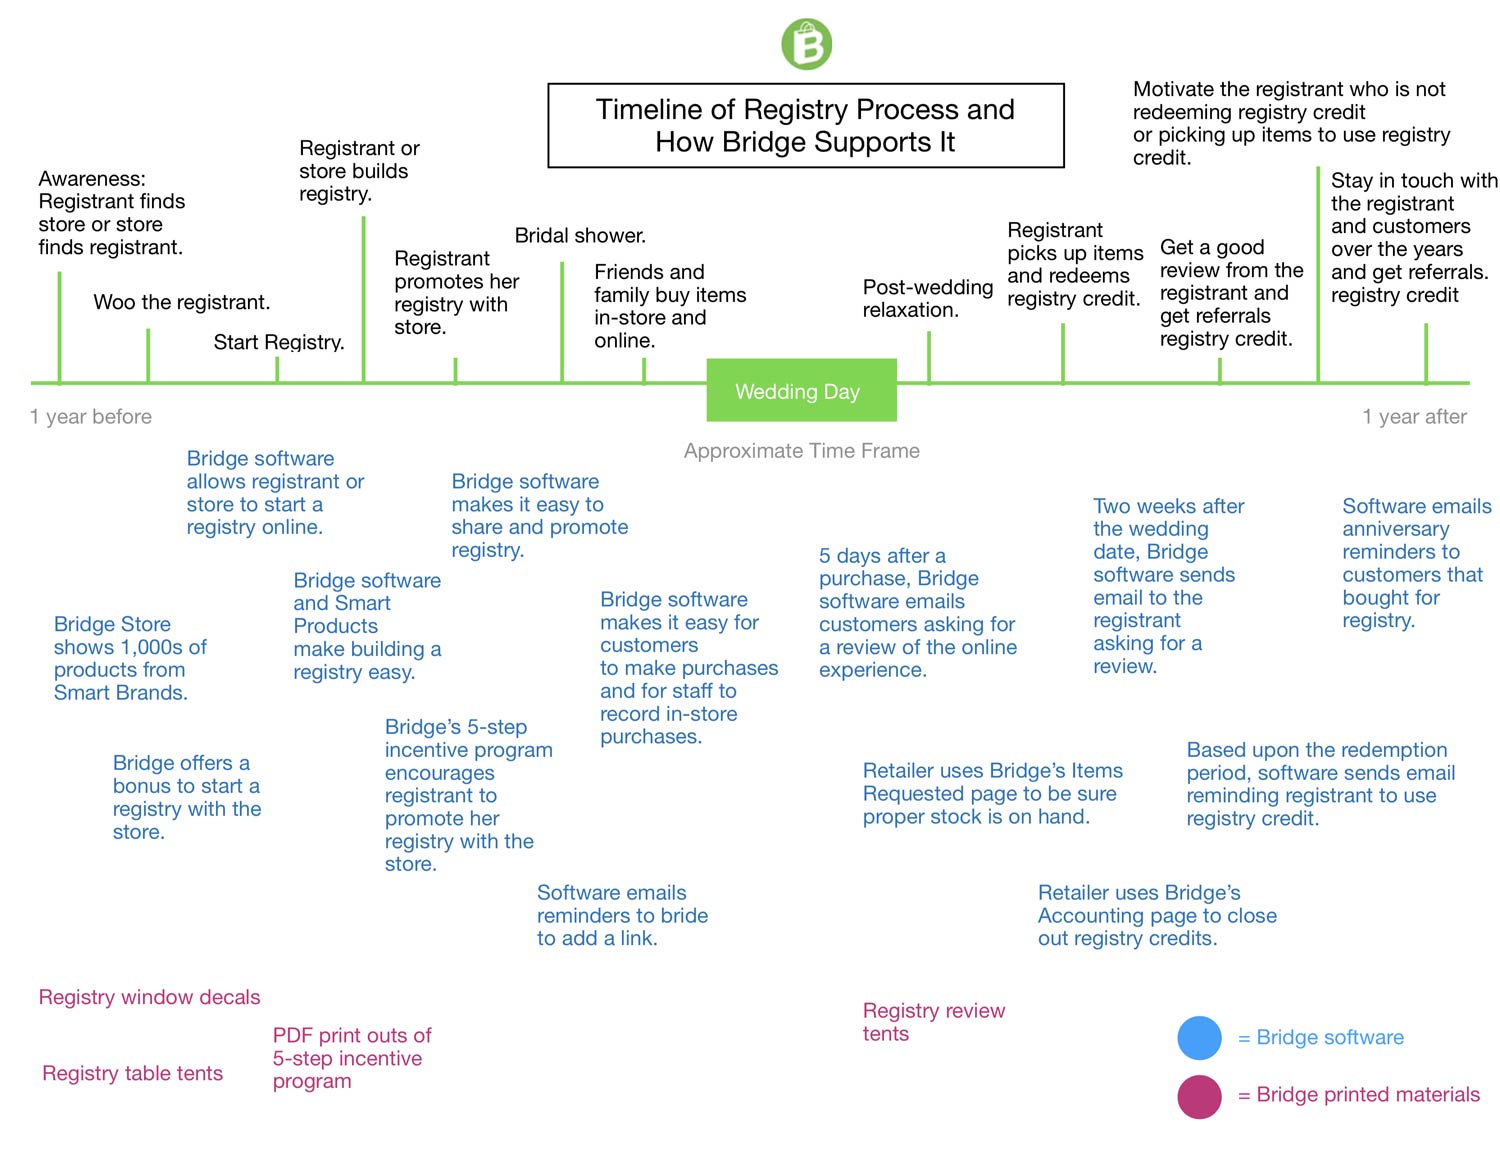 Timeline of registry process